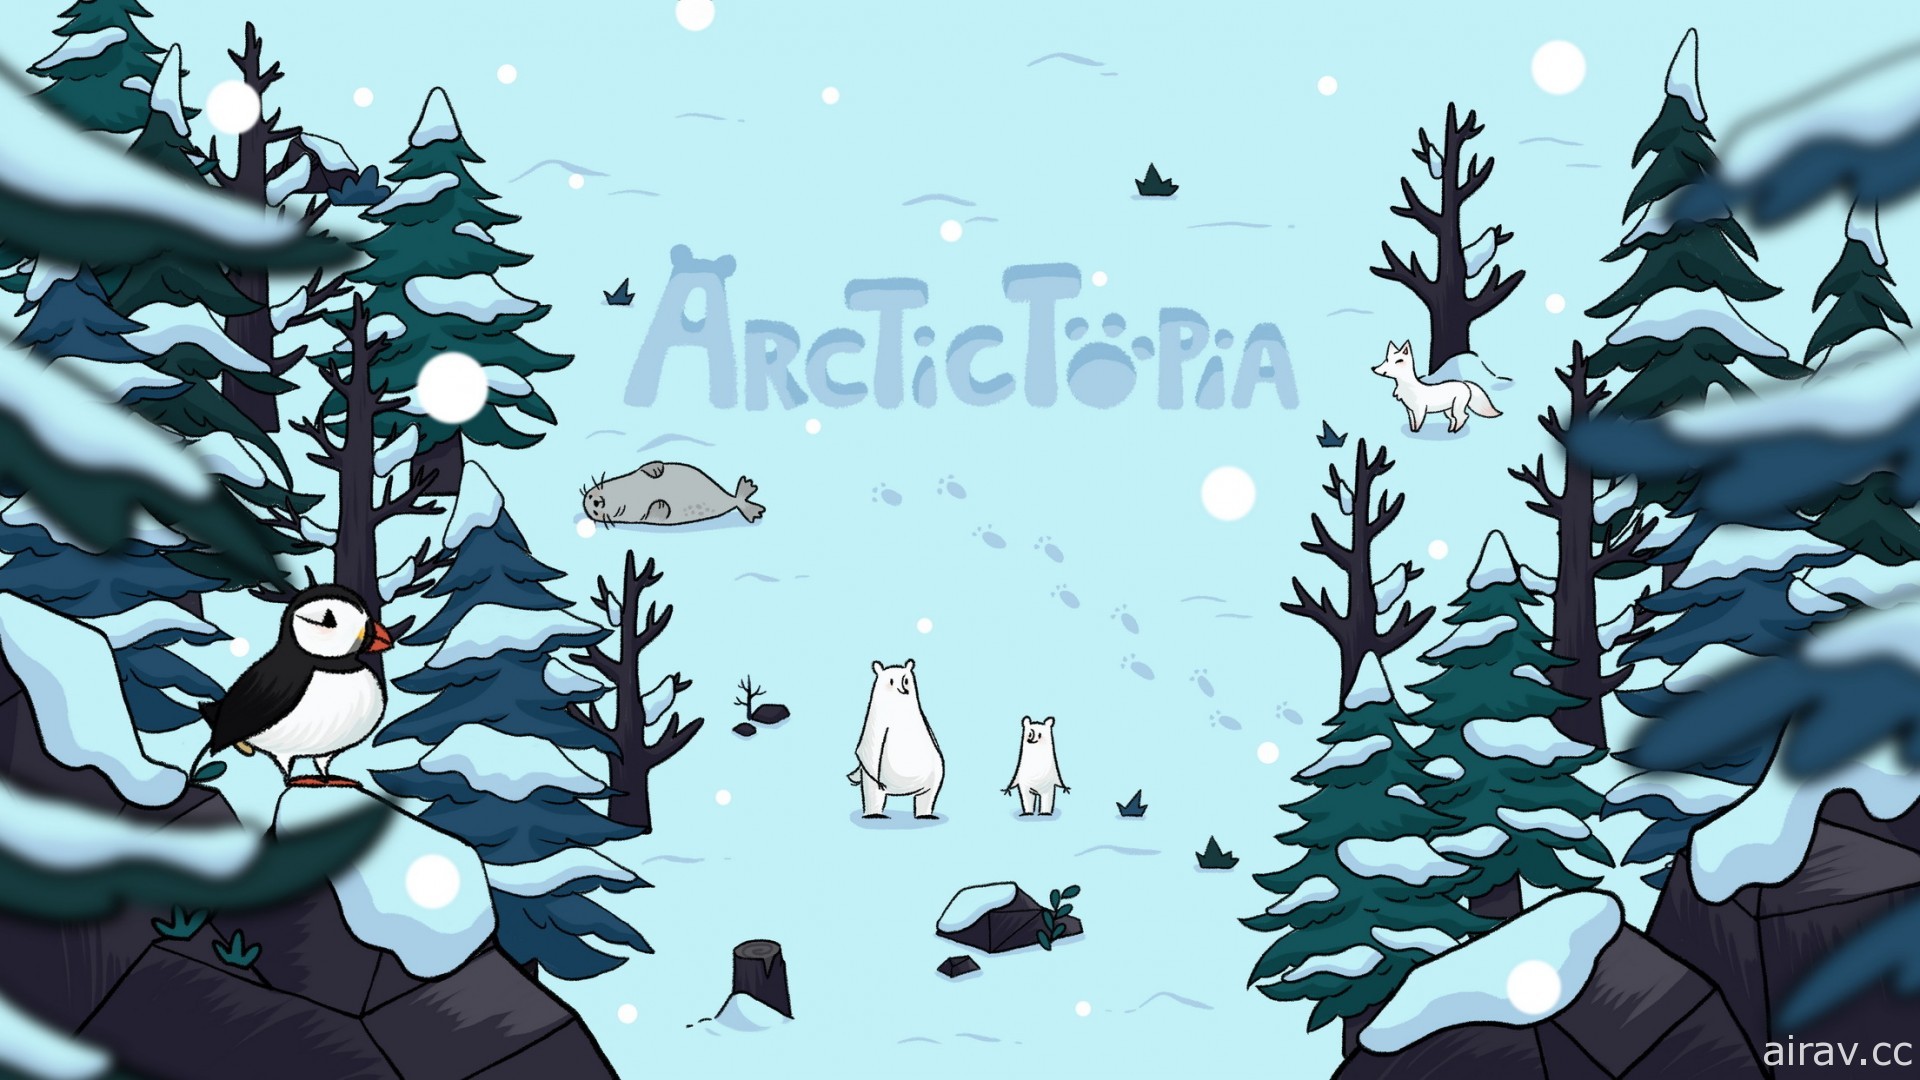 益智解謎遊戲《極地樂園 Arctictopia》PC 版 8 月問世